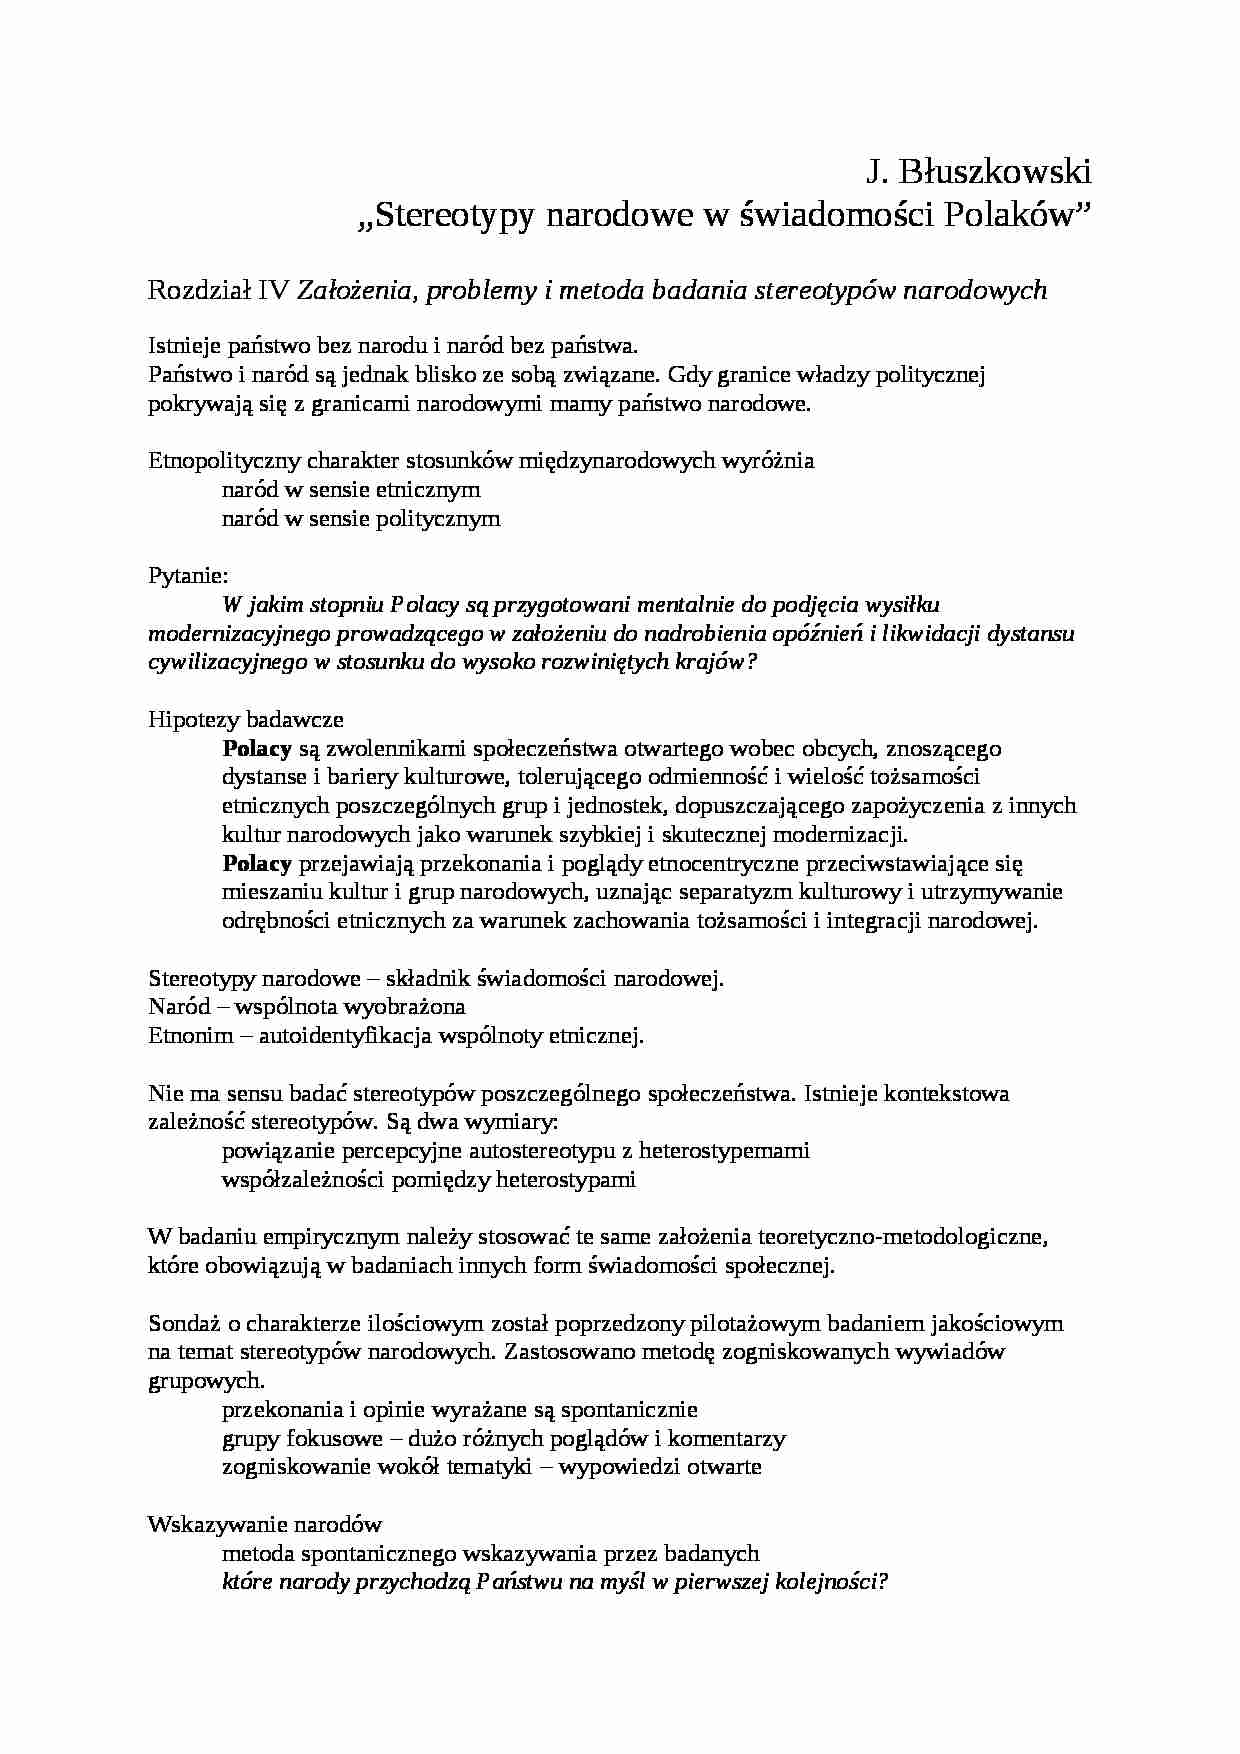 J. Błuszkowski-Stereotypy narodowe w świadomości Polaków - strona 1